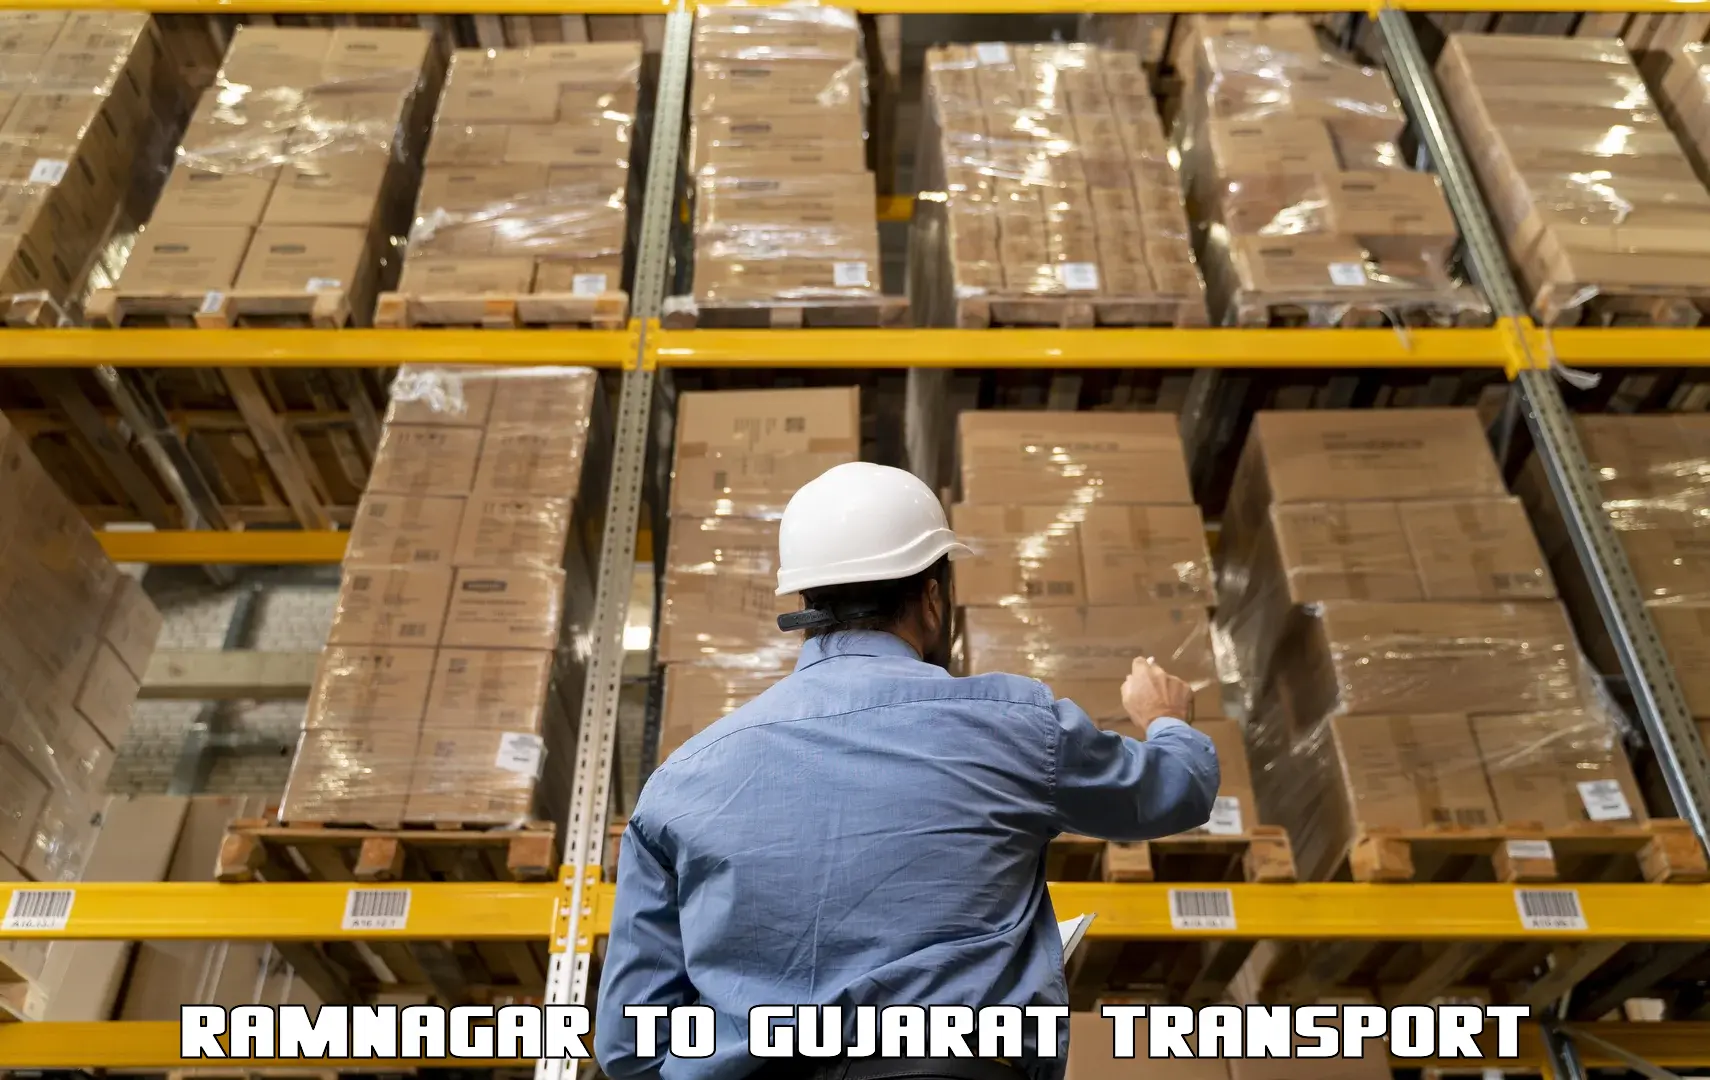 Daily transport service Ramnagar to Dwarka